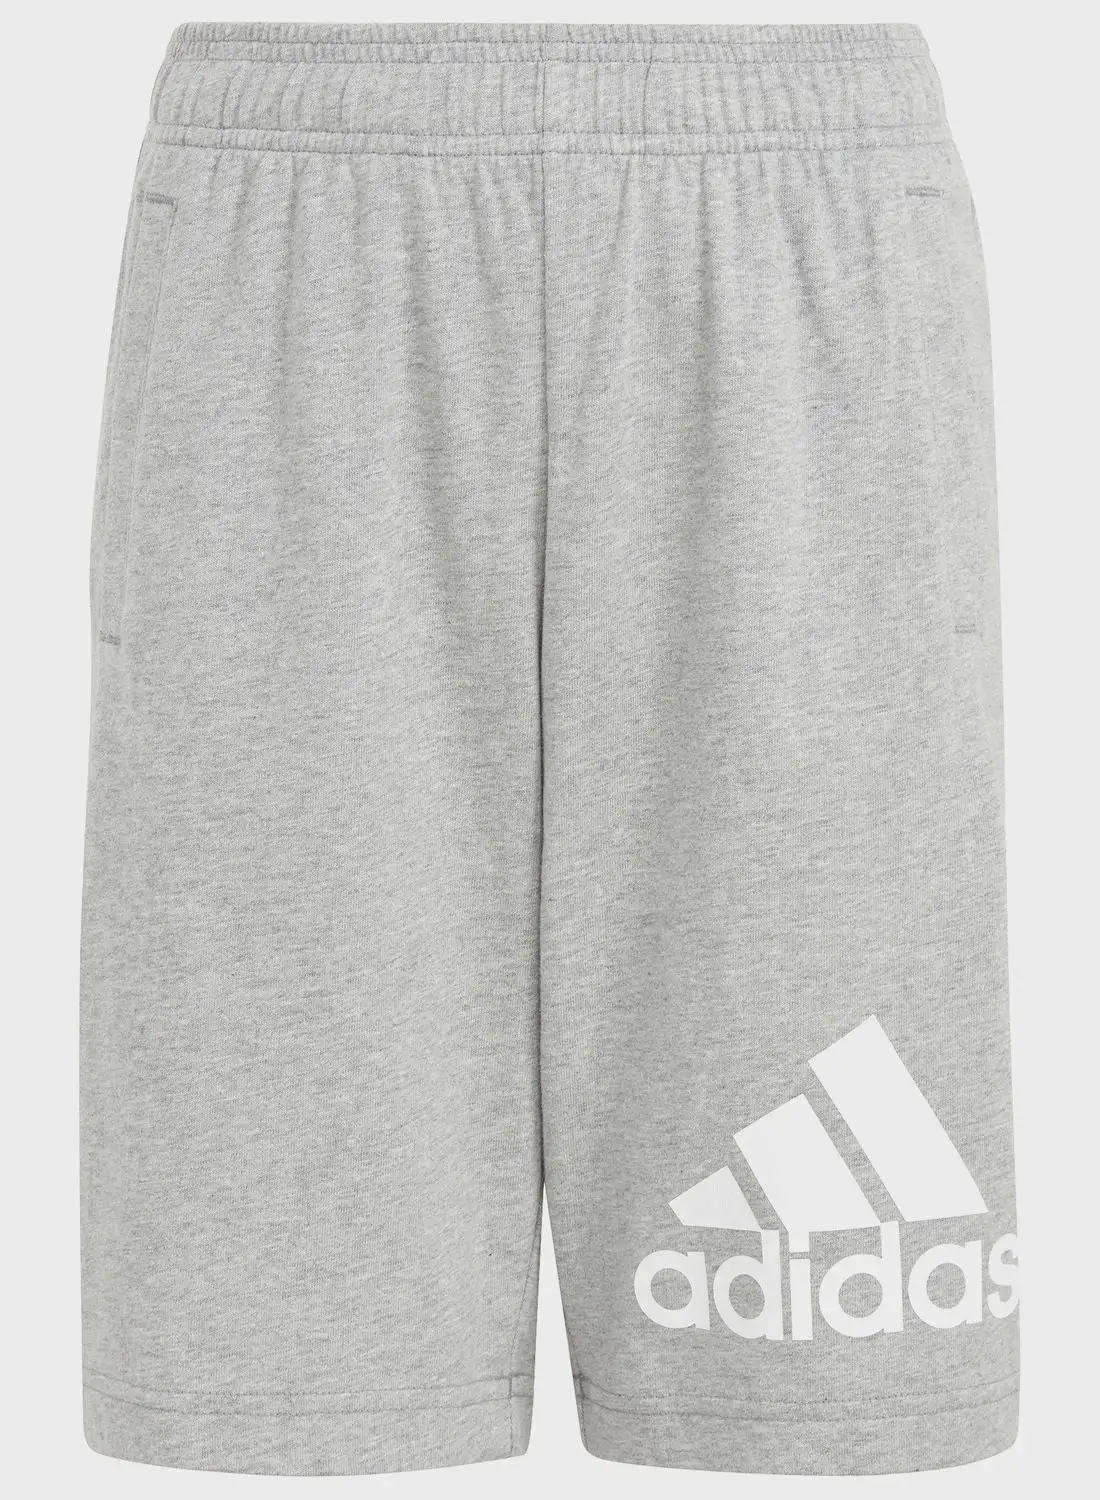 Adidas Big Logo Shorts